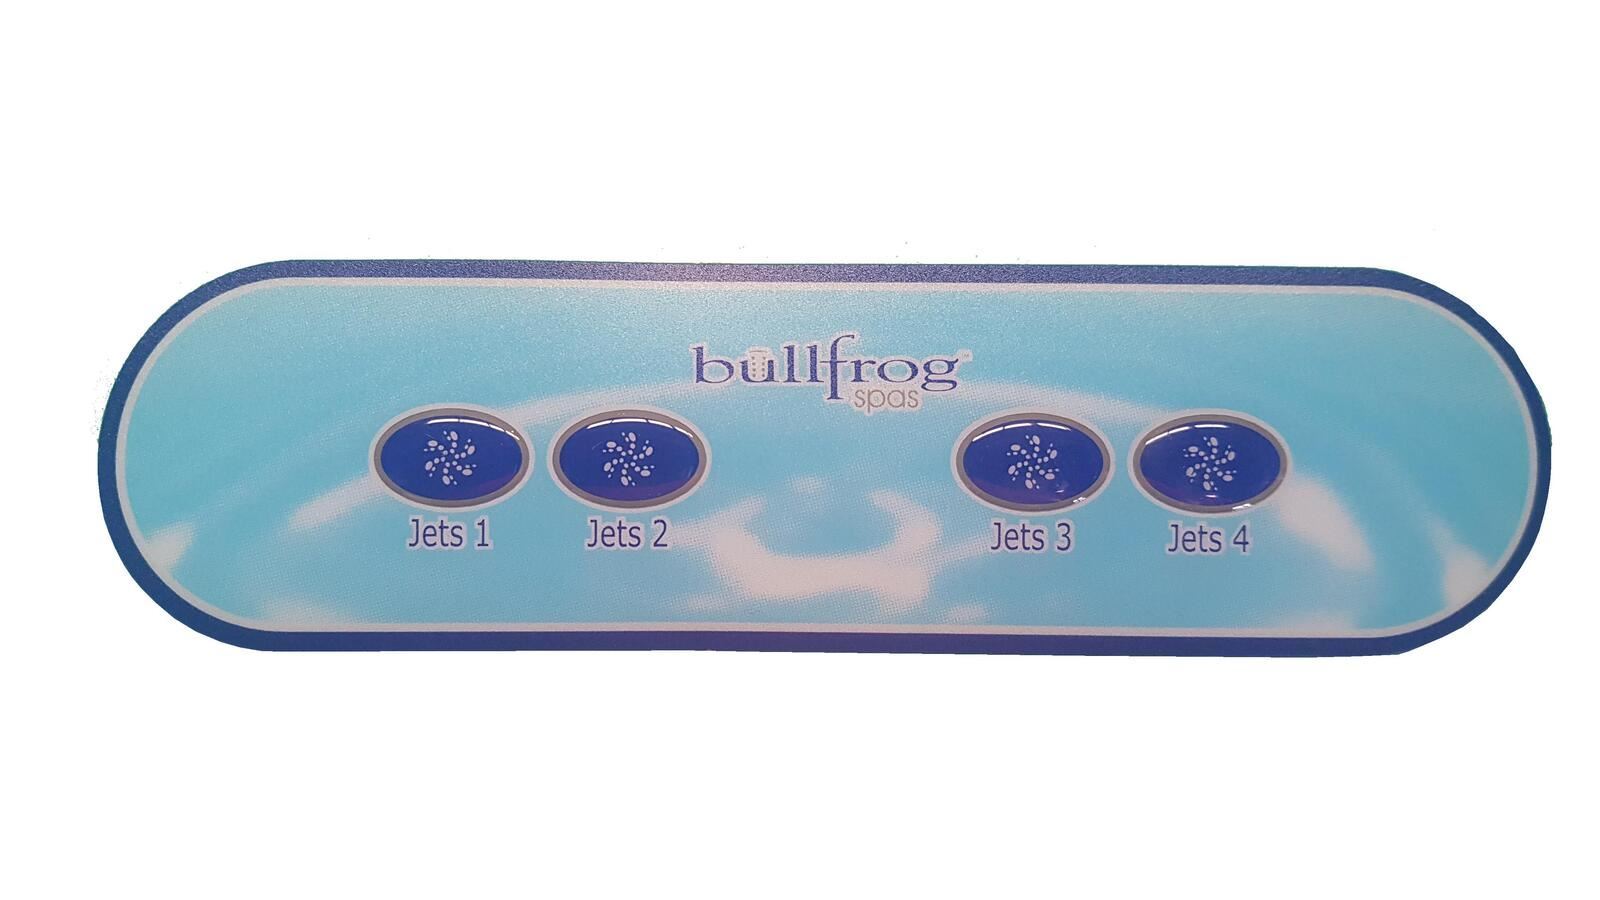 Balboa AX40 BullFrog Spas Overlay - High-quality accessory.